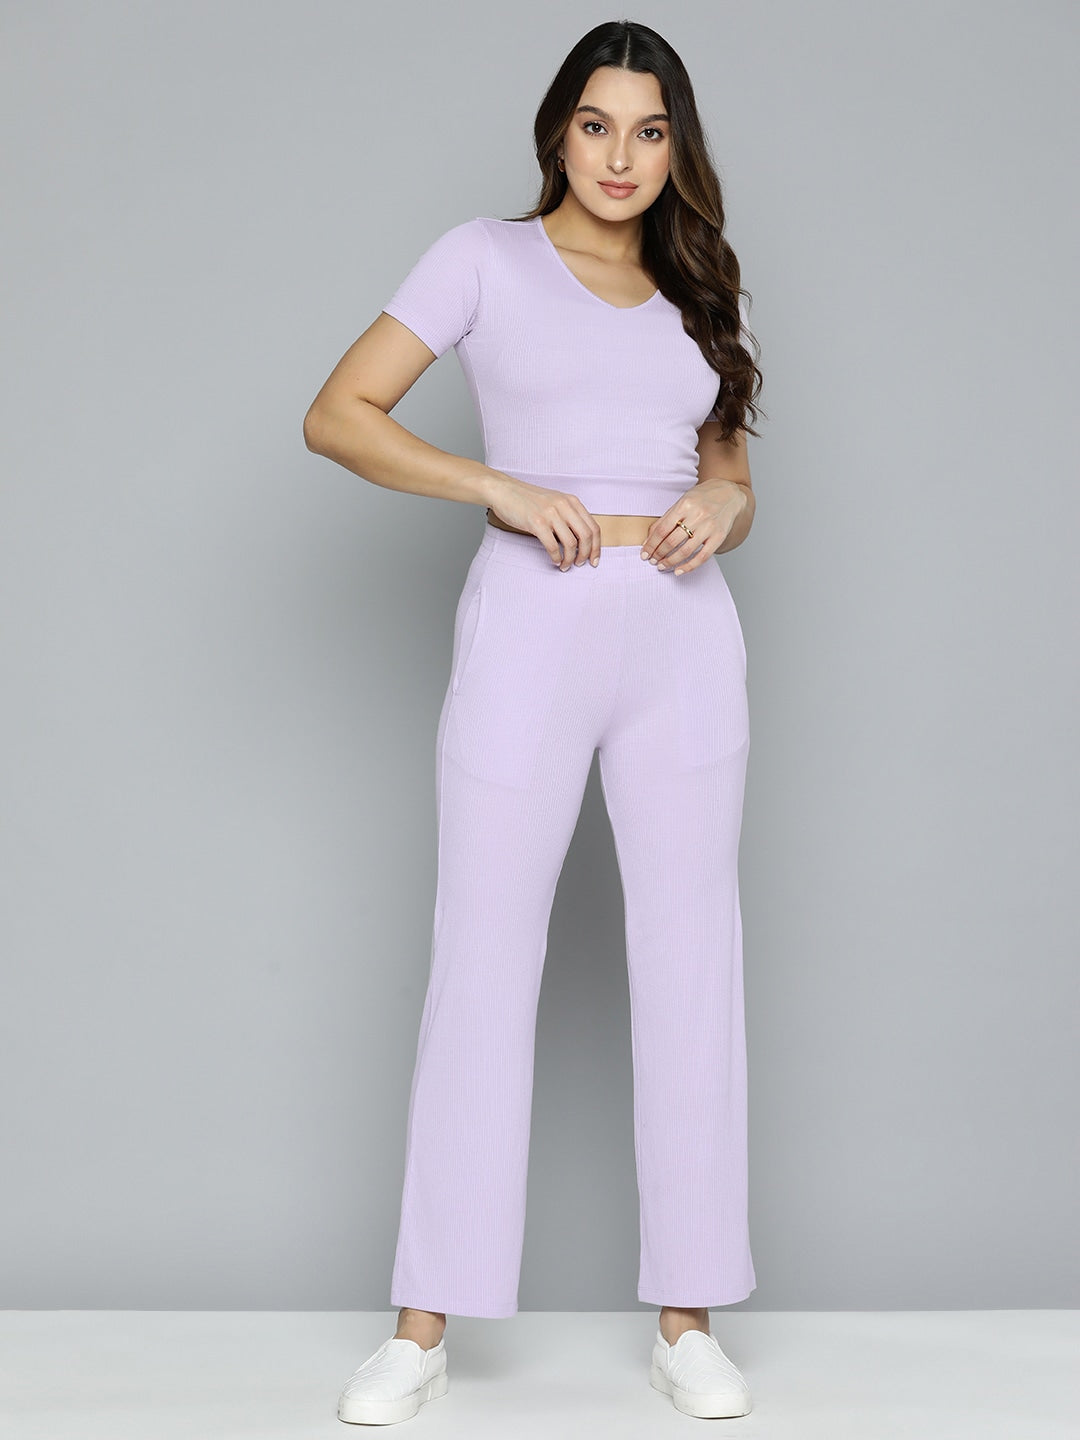 Purple State Women Crop Top  Pant Set  Buy Purple State Women Crop Top   Pant Set Online at Best Prices in India  Flipkartcom